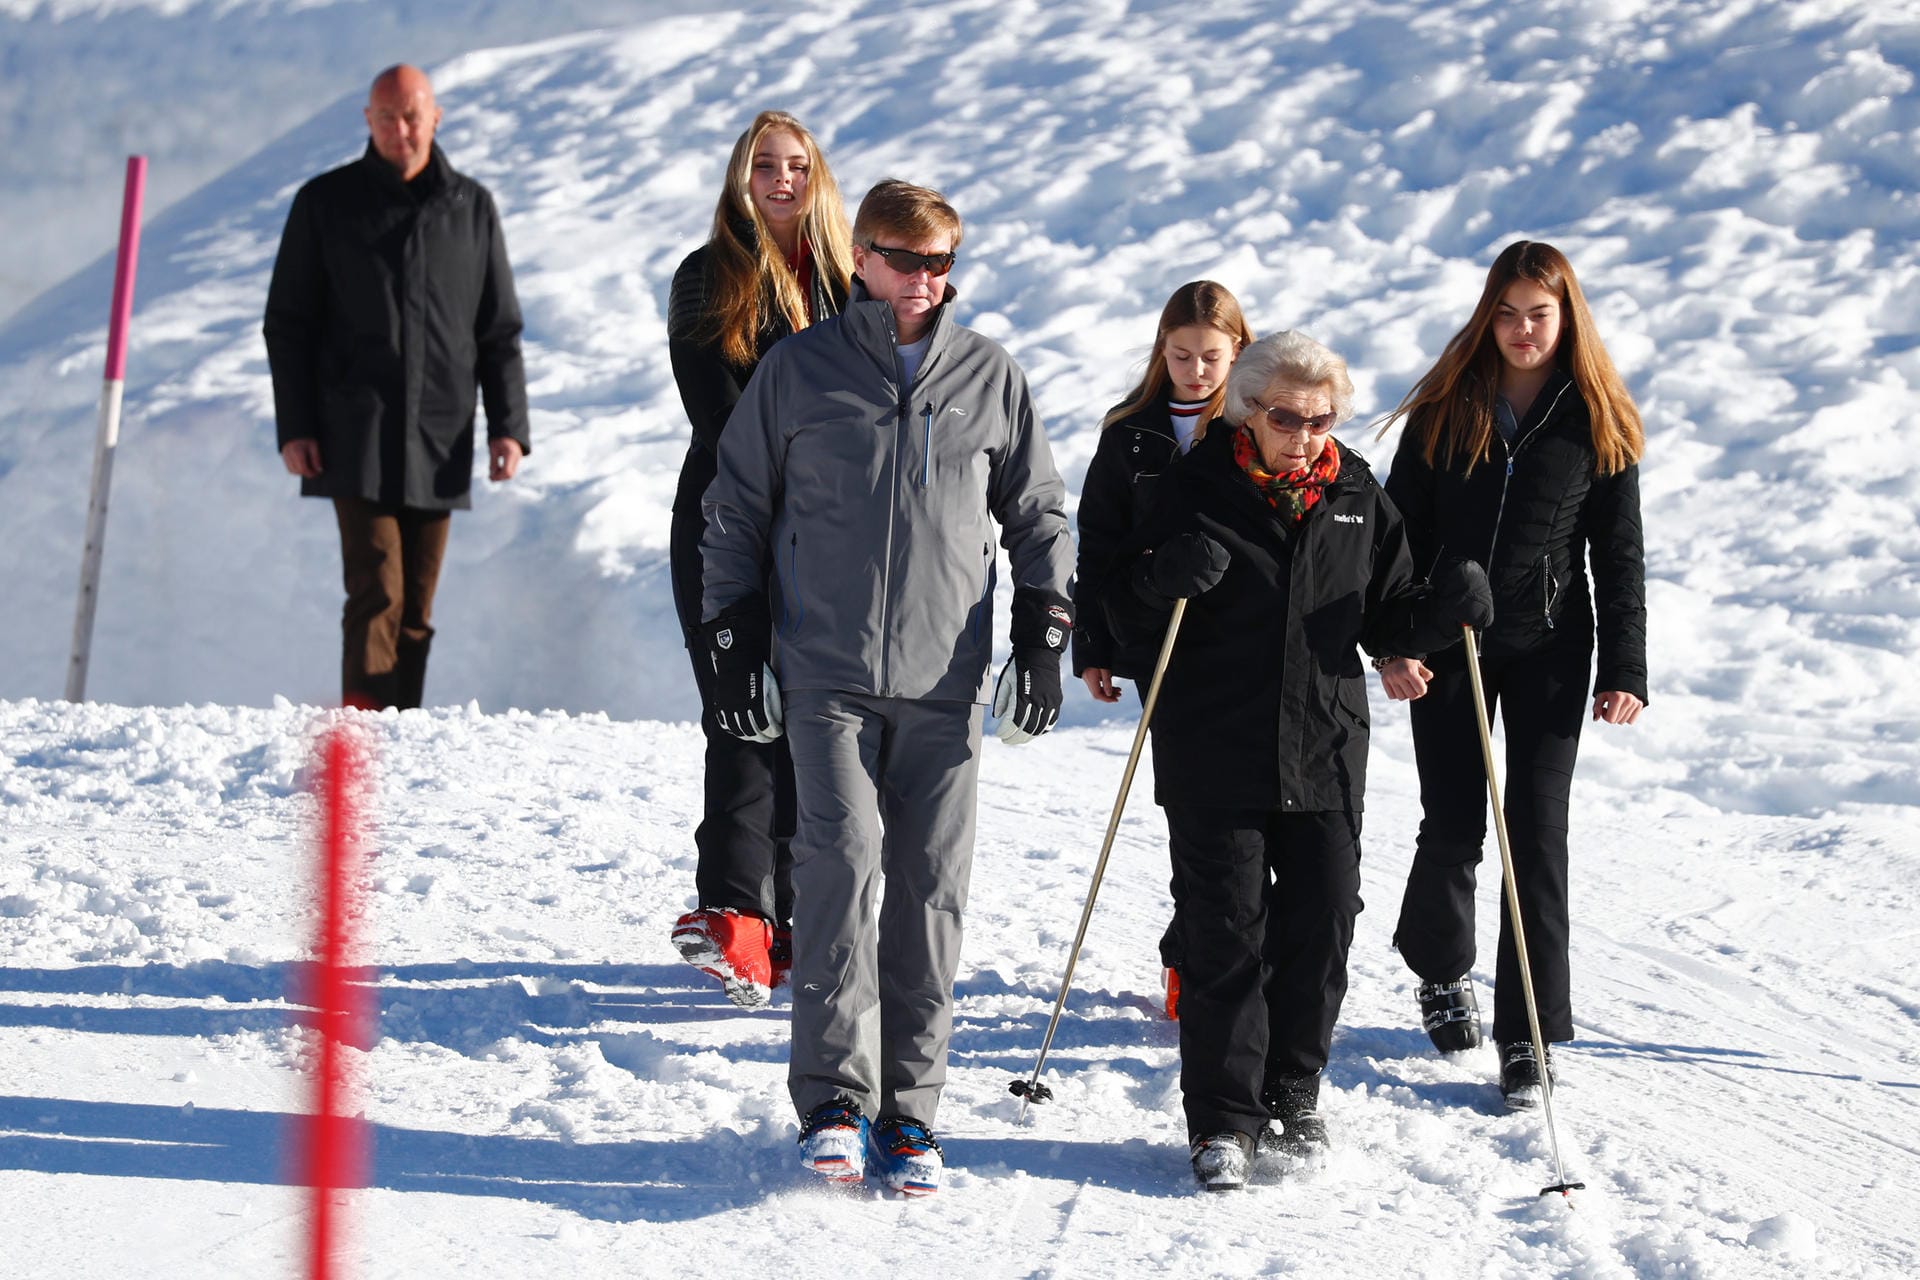 Spaziergang im Schnee: Die niederländische Königsfamilie läuft durch den österreichischen Skiort Lech.